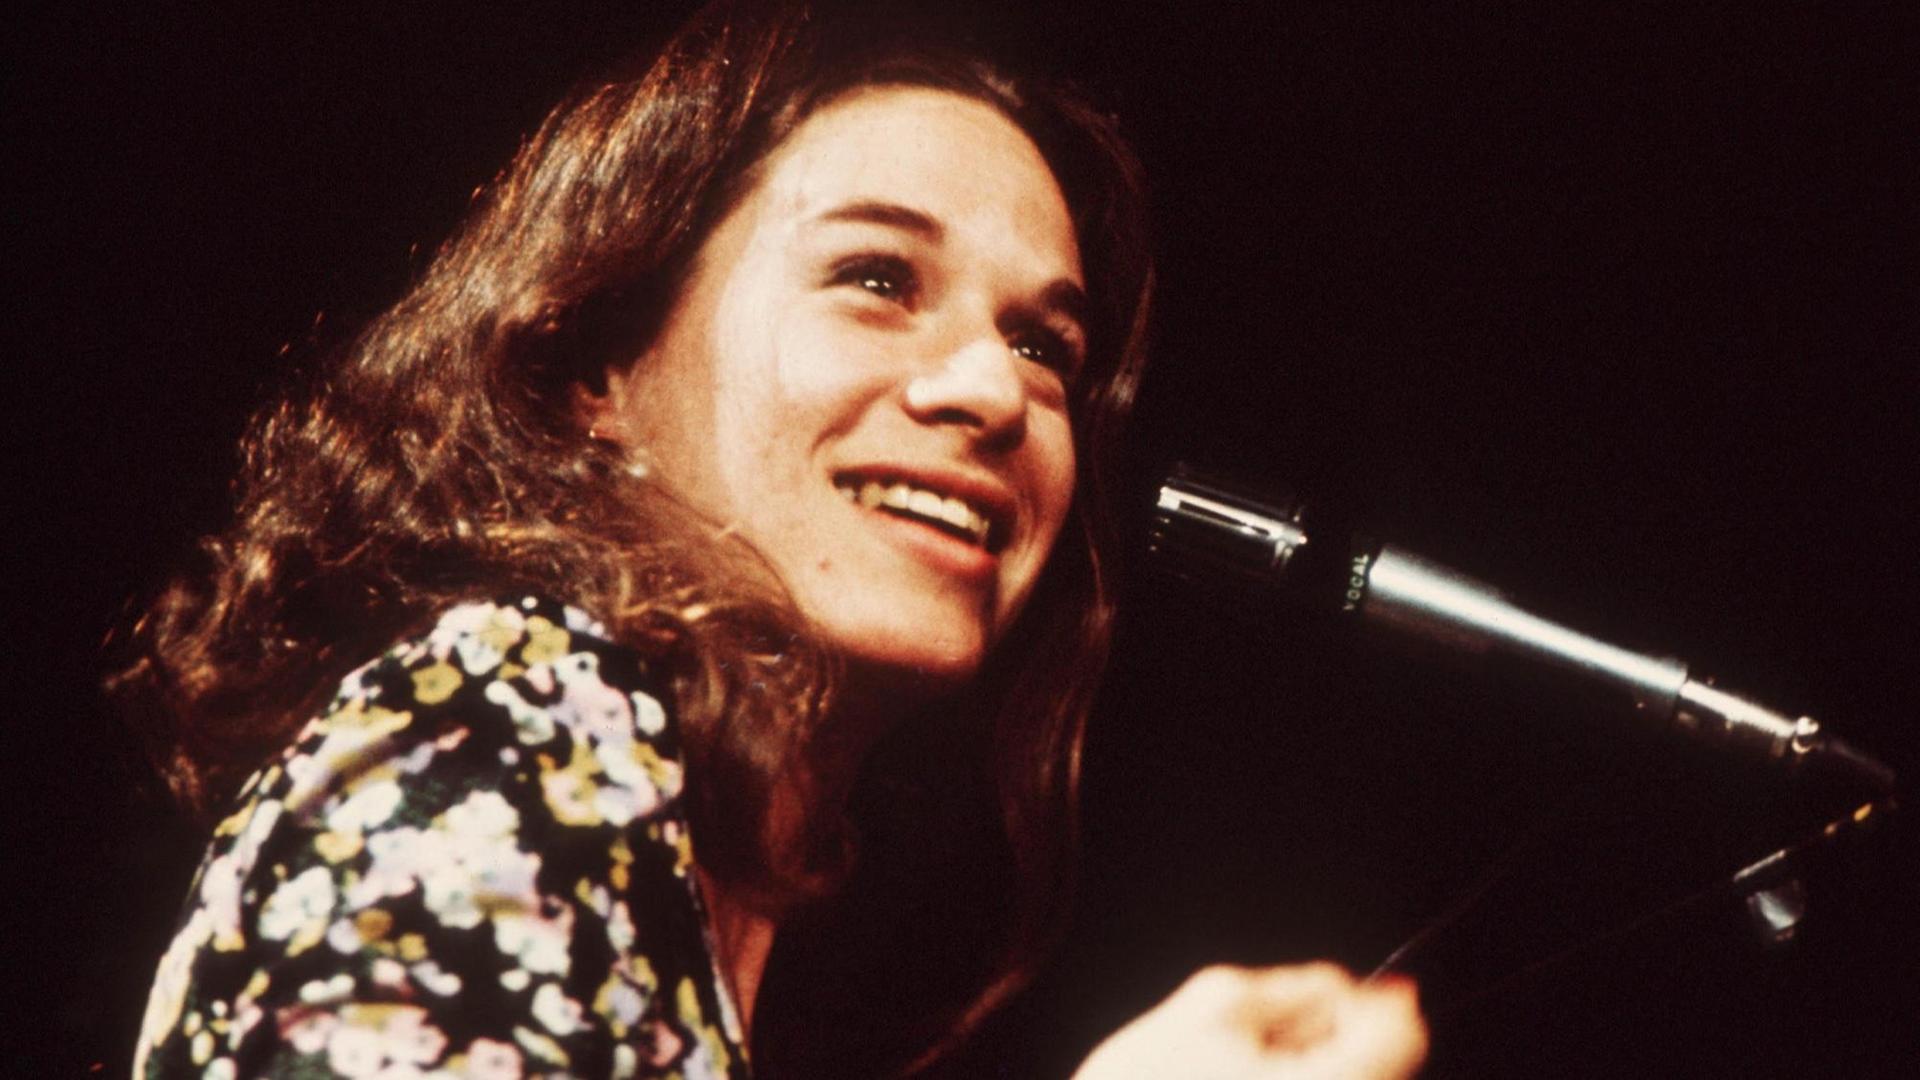 Porträt einer jungen Frau mit langen braunen gewellten Haaren und schwarz-weiß-gelb bedruckter Bluse. Sie strahlt über das ganze Gesicht - vor ihr ein Mikrofon. Vermutlich handelt es sich um eine Bühnensituation, der Hintergrund ist schwarz.